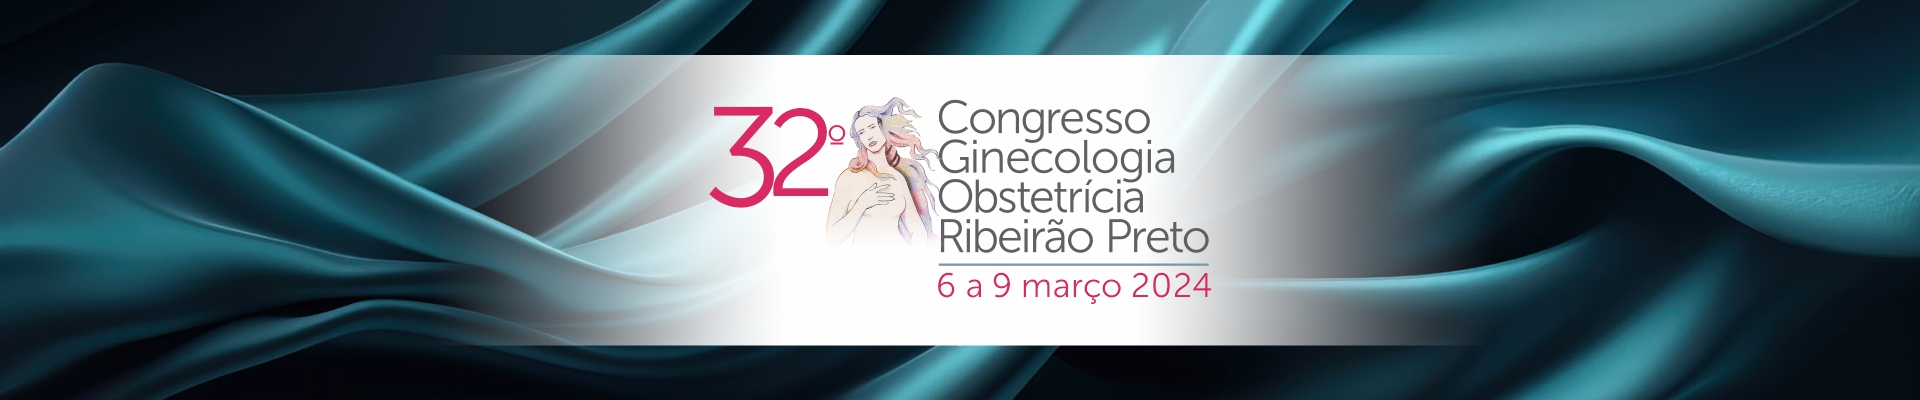 32º Congresso de Ginecologia e Obstetrícia de Ribeirão Preto Realização - Fundação Maternidade Sinhá Junqueira